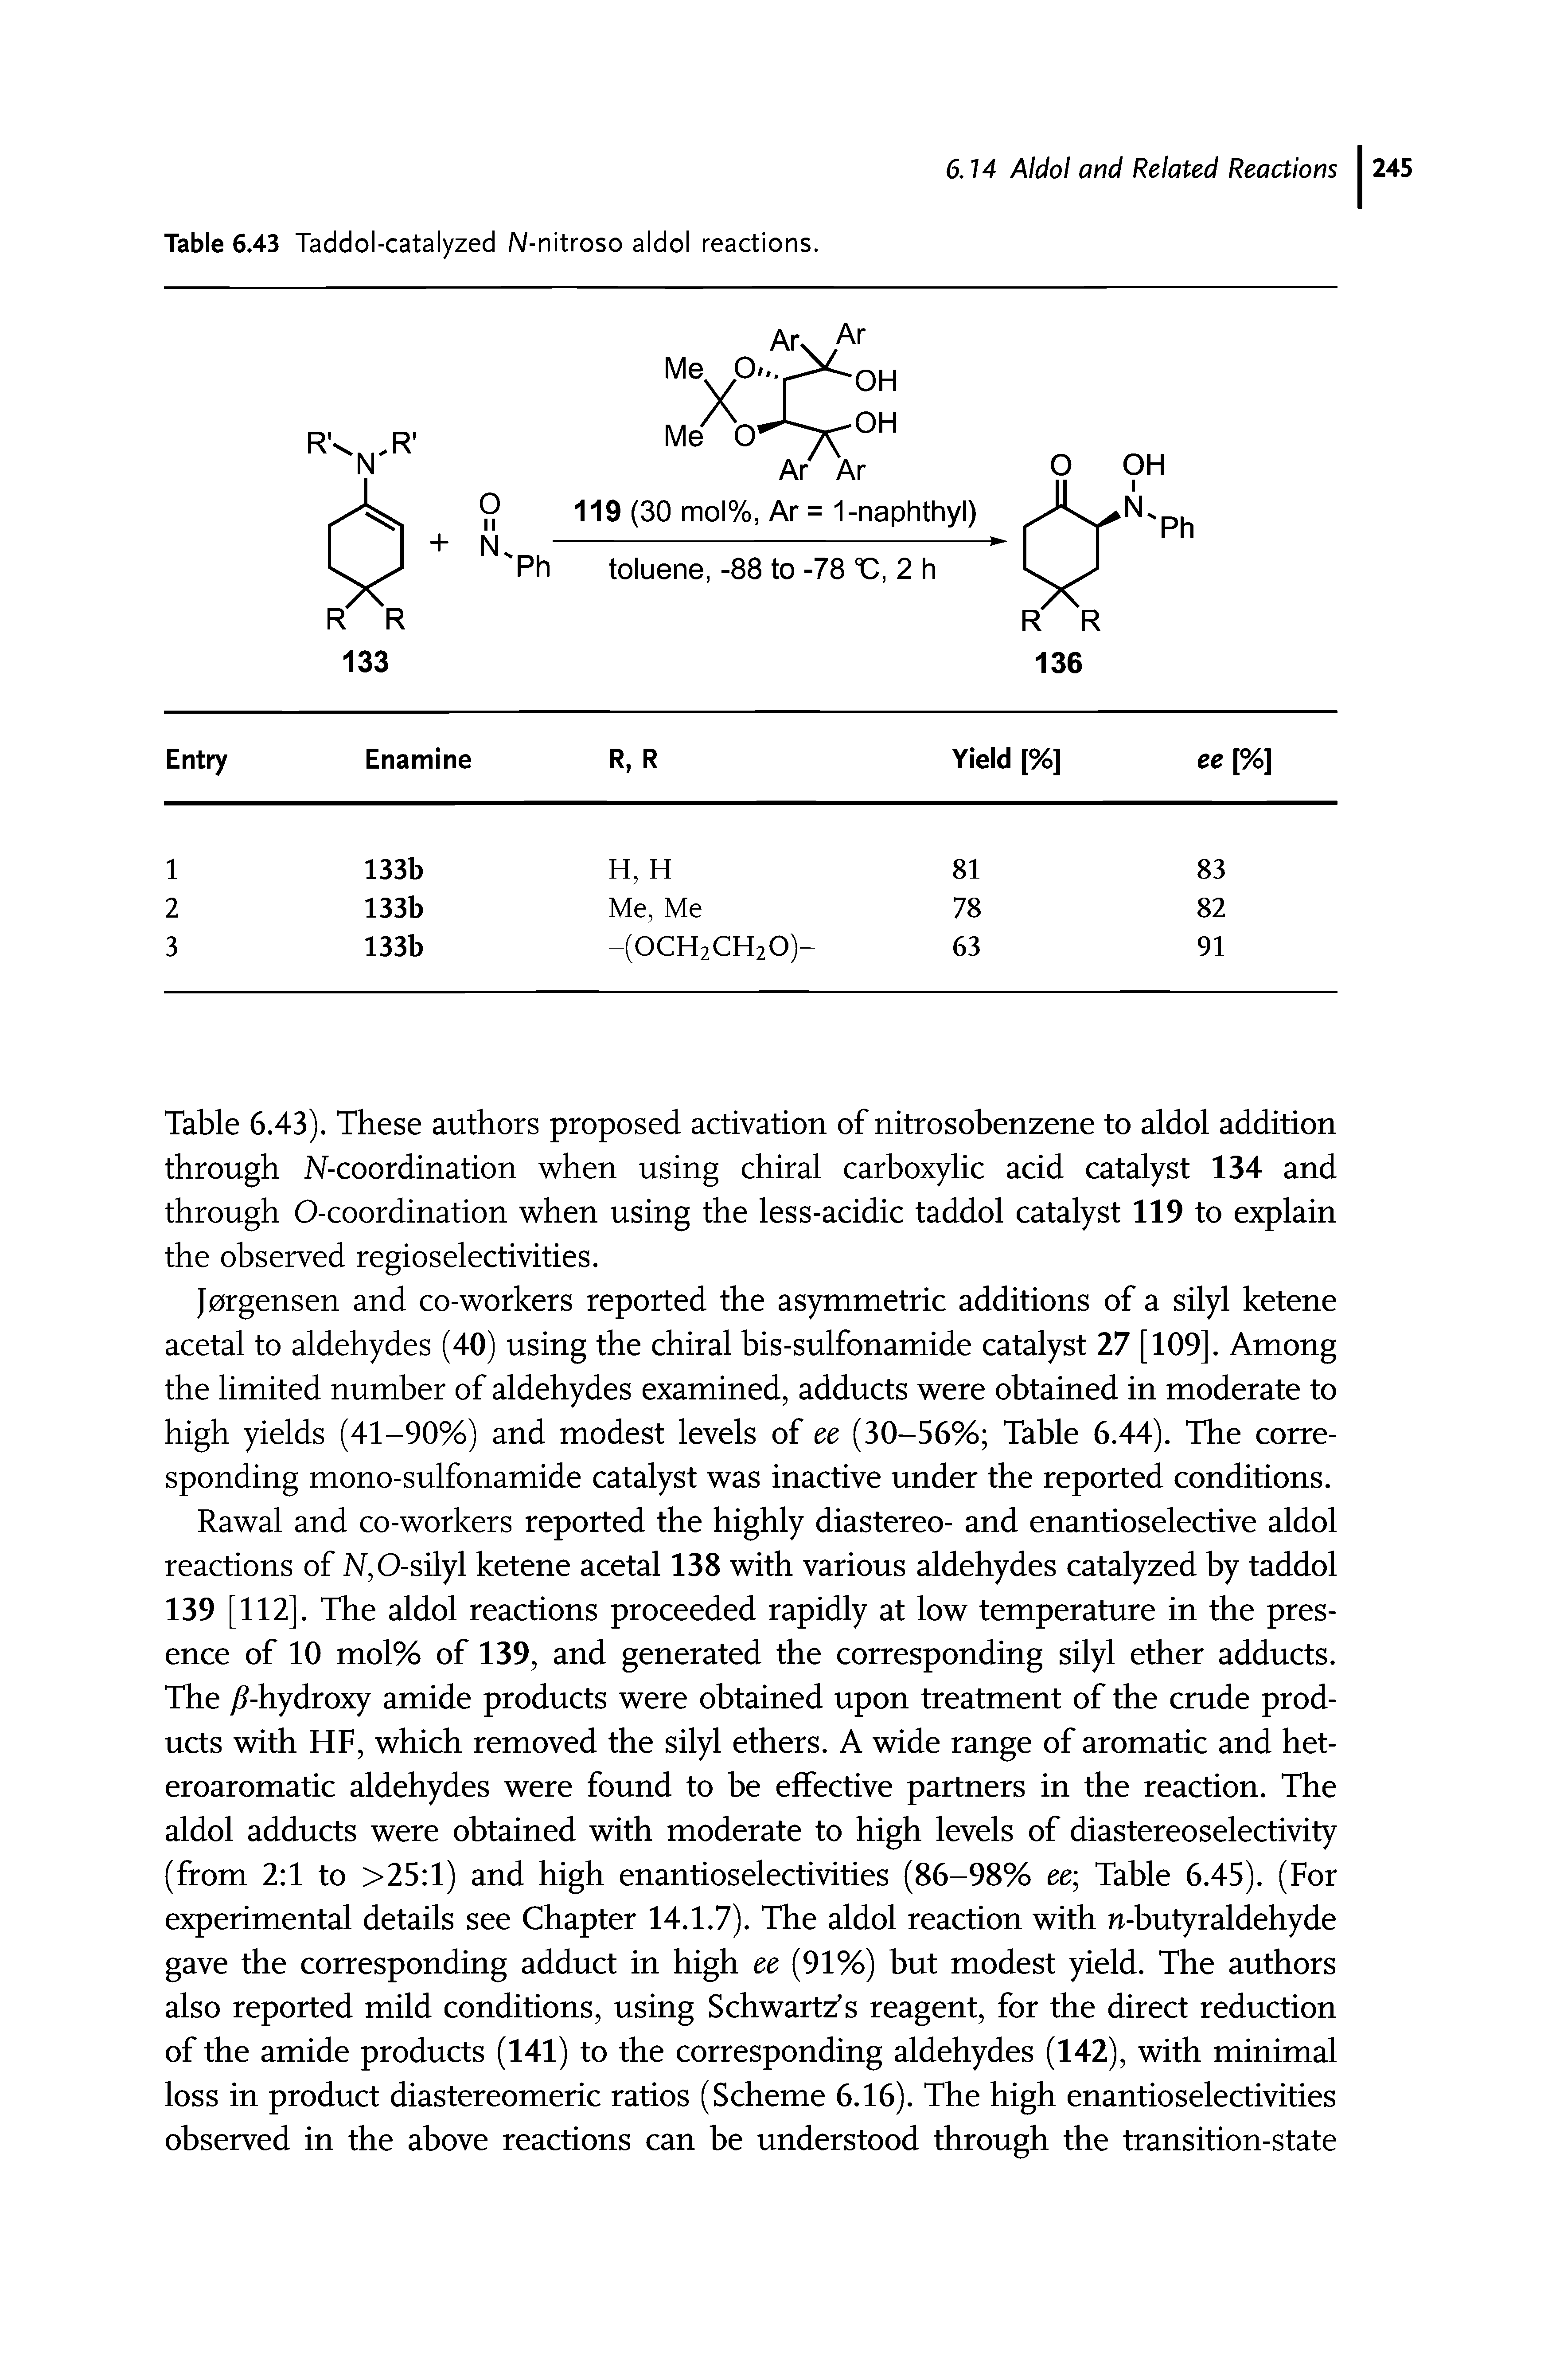 Table 6.43 Taddol-catalyzed N-nitroso aldol reactions.